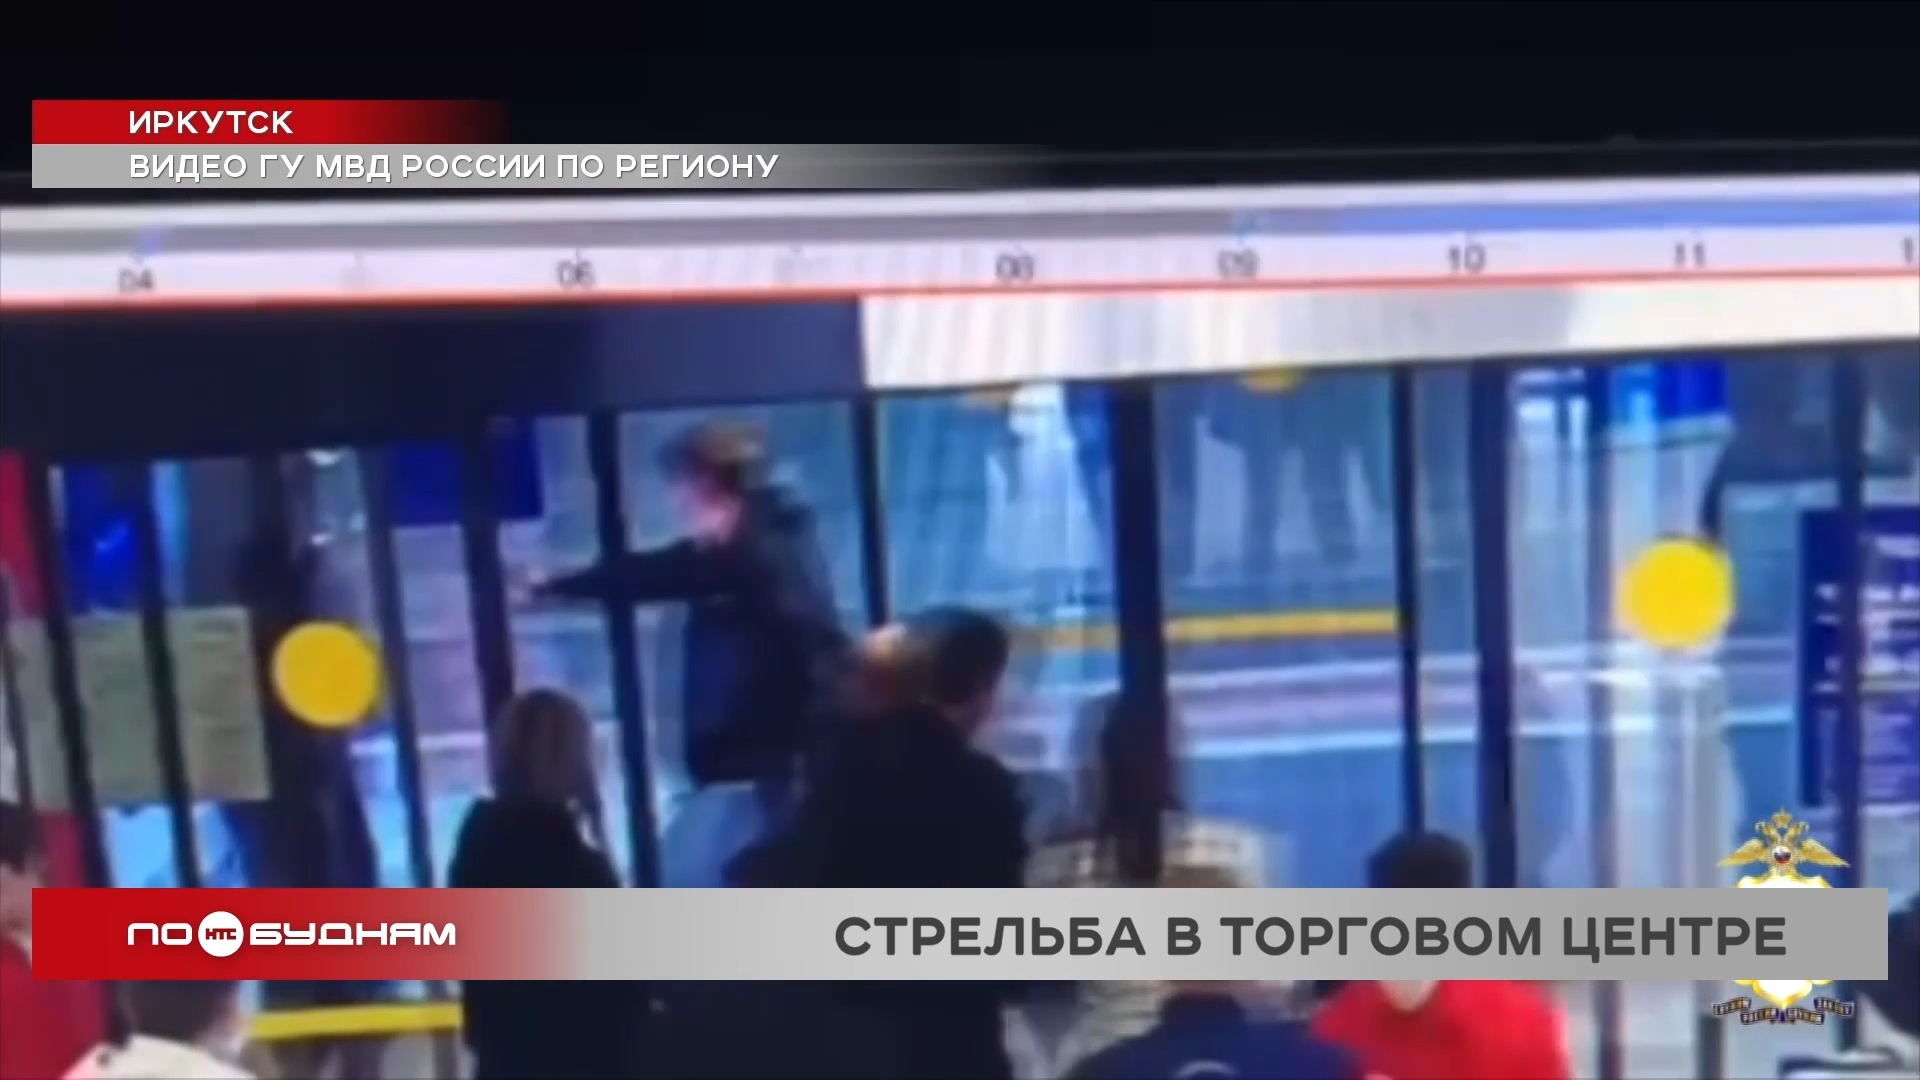 Драка закончилась стрельбой и ранением человека в торгово-развлекательном центре в Иркутске